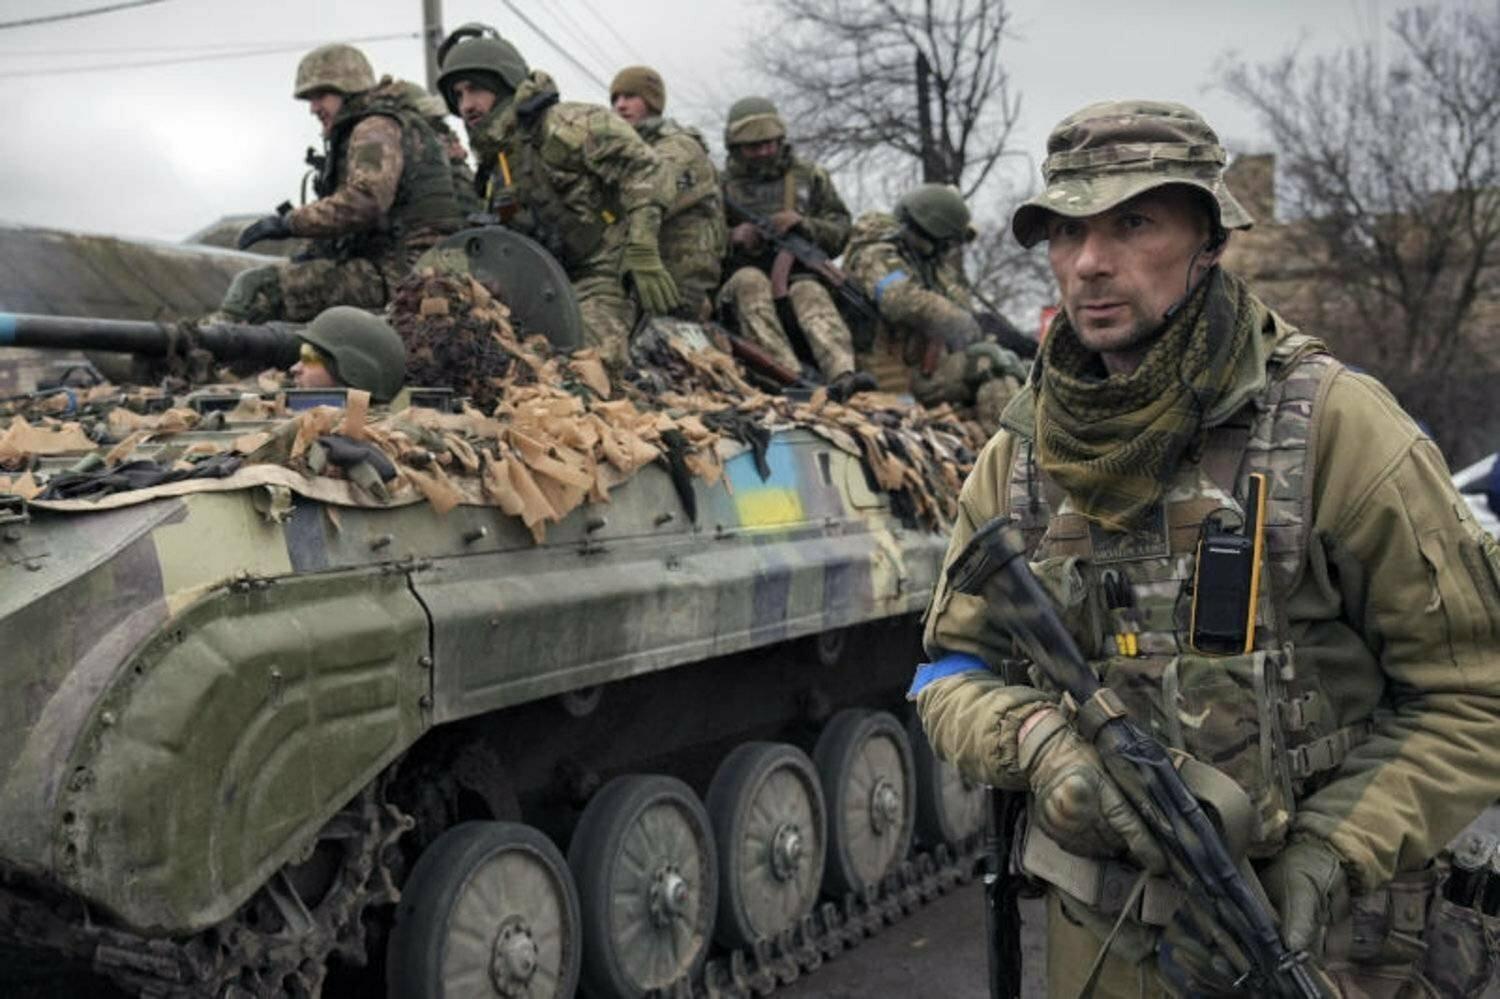 Streľba medzi ukrajinskými vojakmi si vyžiadala troch mŕtvych. Dôvodom boli osobné vzťahy, uviedla armáda